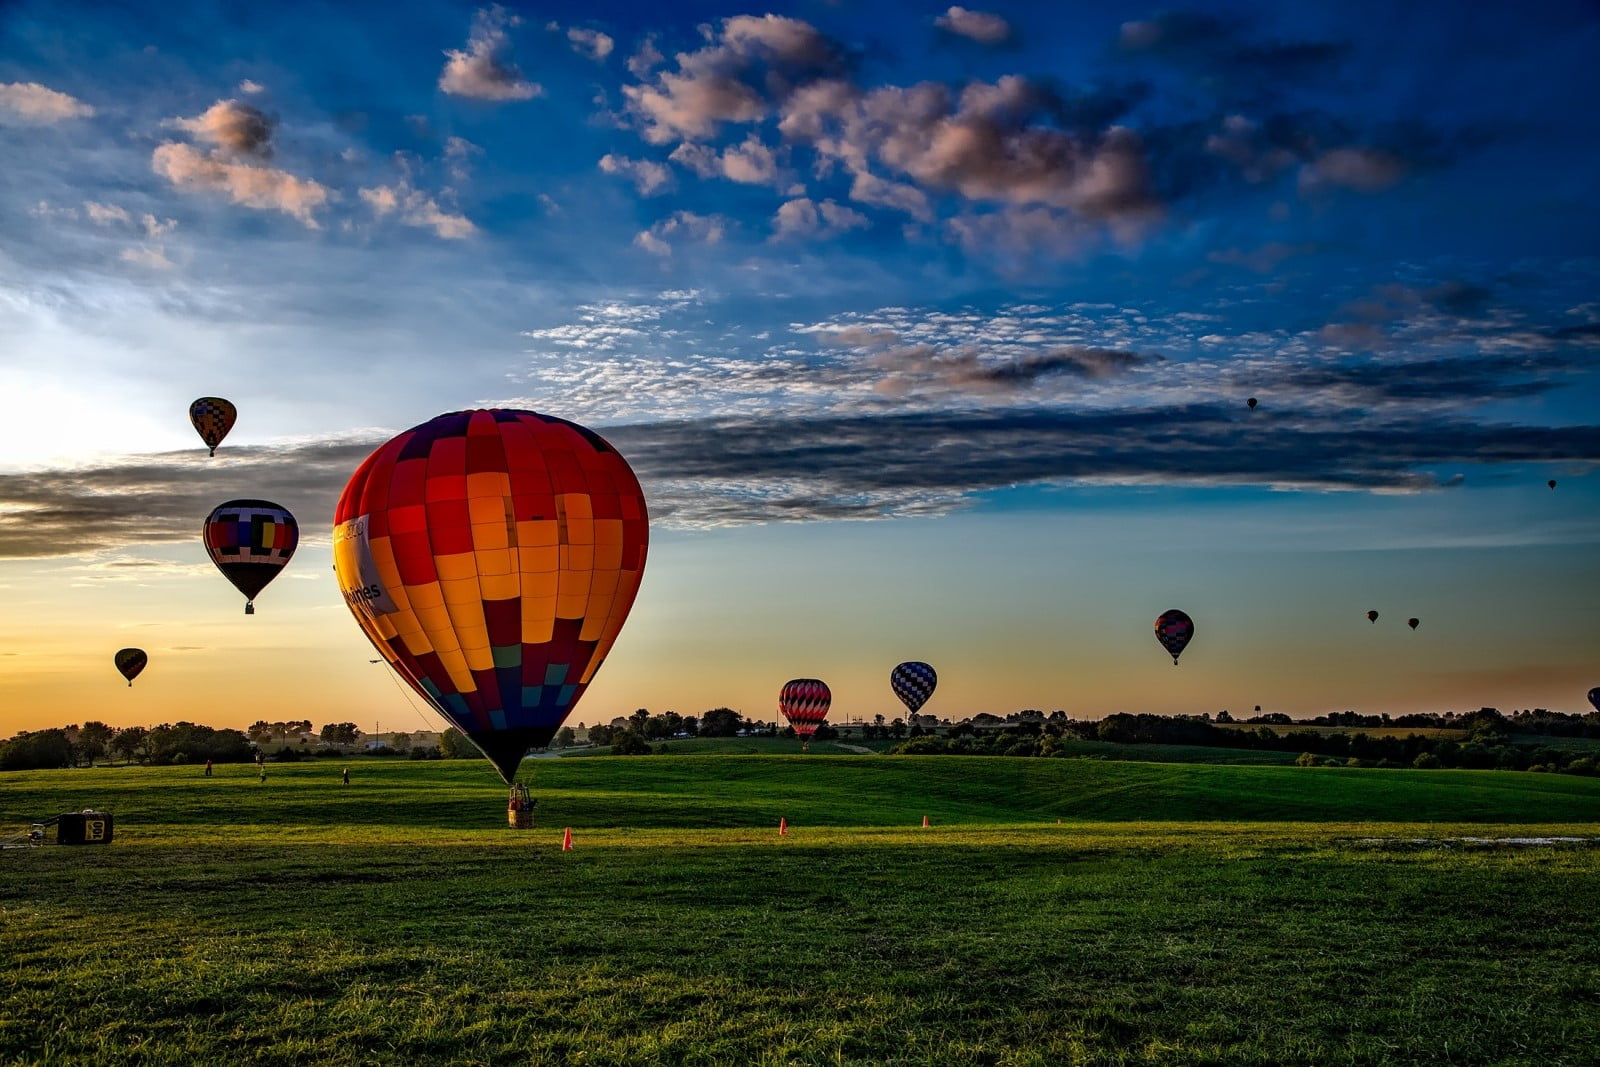 Meer informatie over ballonvaart kosten